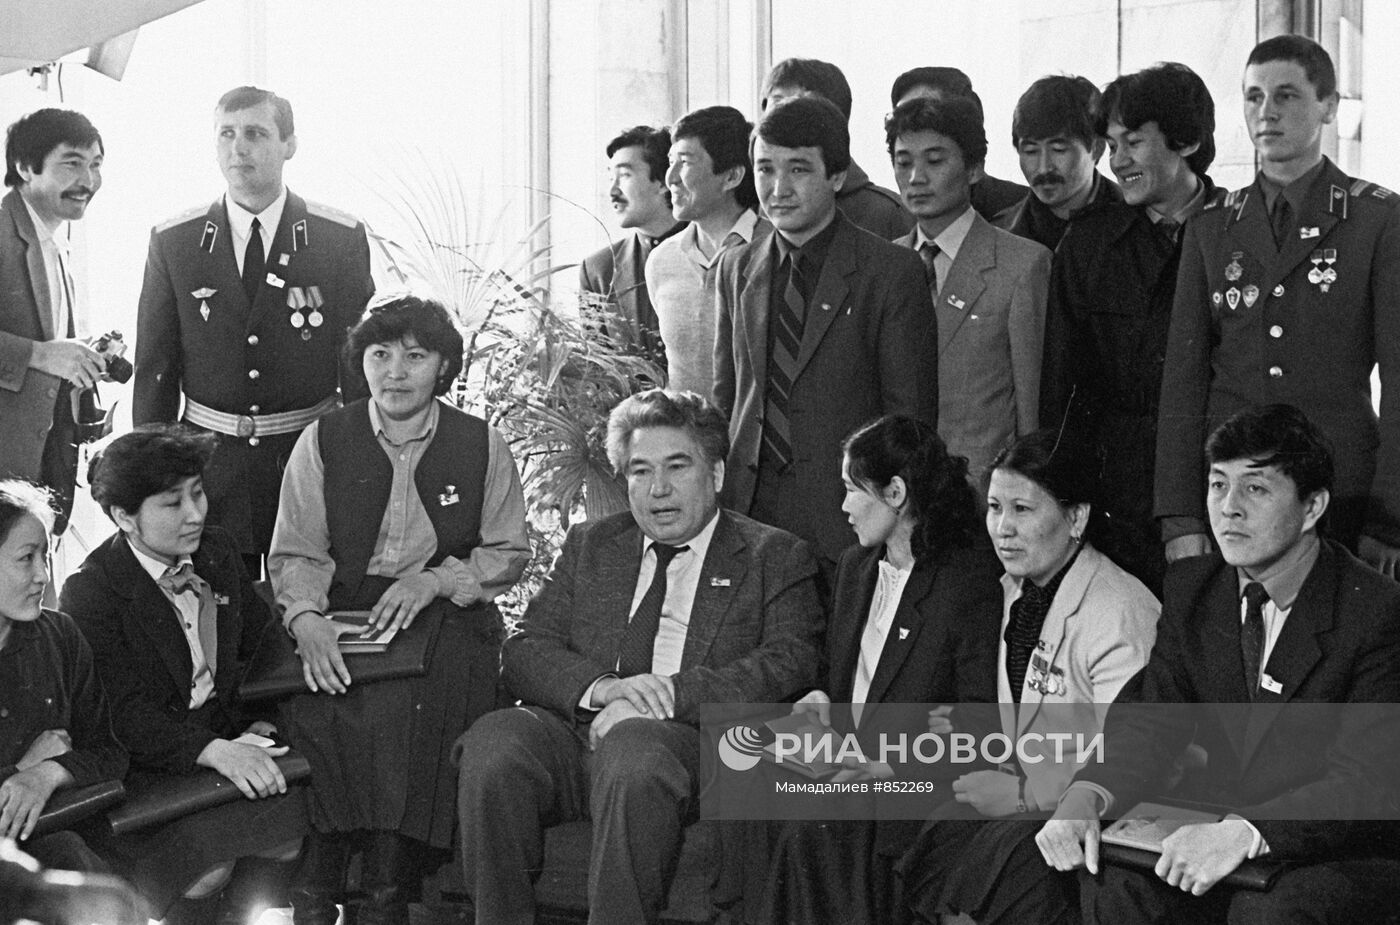 Чингиз Айтматов среди делегатов съезда